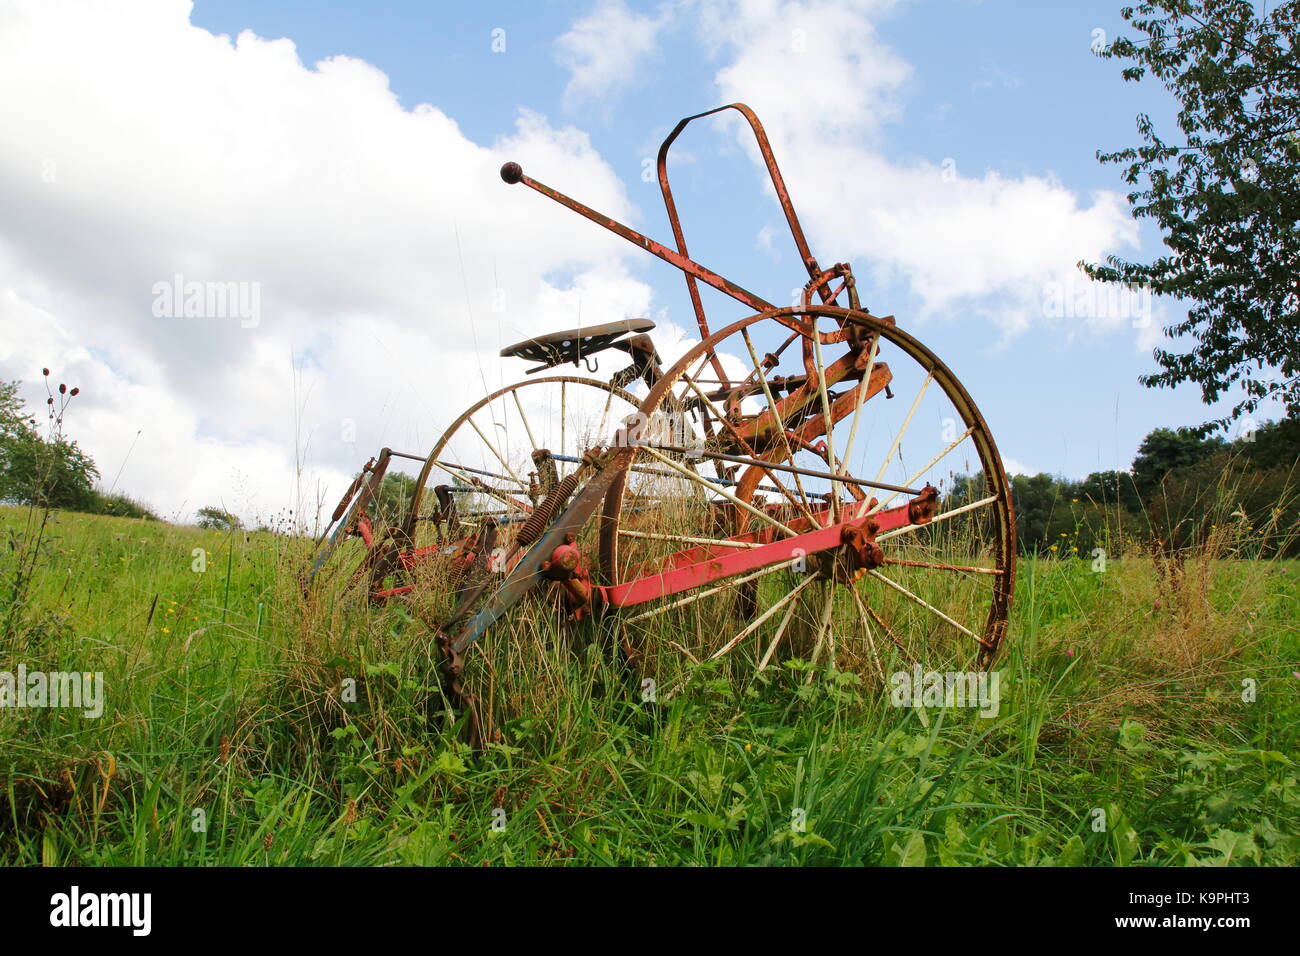 Alter, Traktor, Mähdrescher rostiger auf einer Wiese, einem Feld Banque D'Images